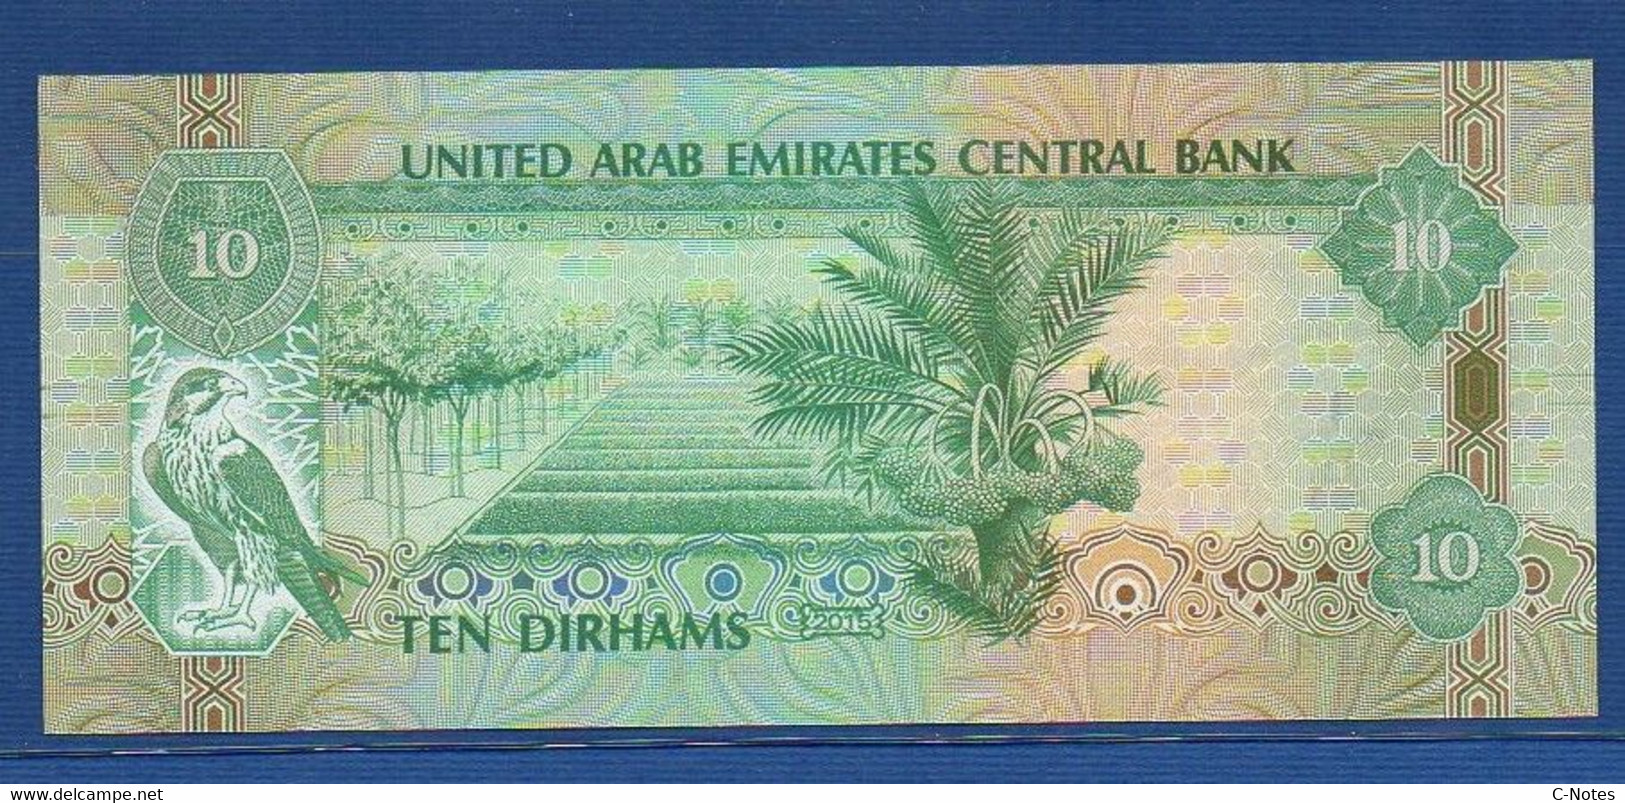 UNITED ARAB EMIRATES - P.27d – 10 DIRHAMS 2015 UNC Serie 158831182 - Emirati Arabi Uniti